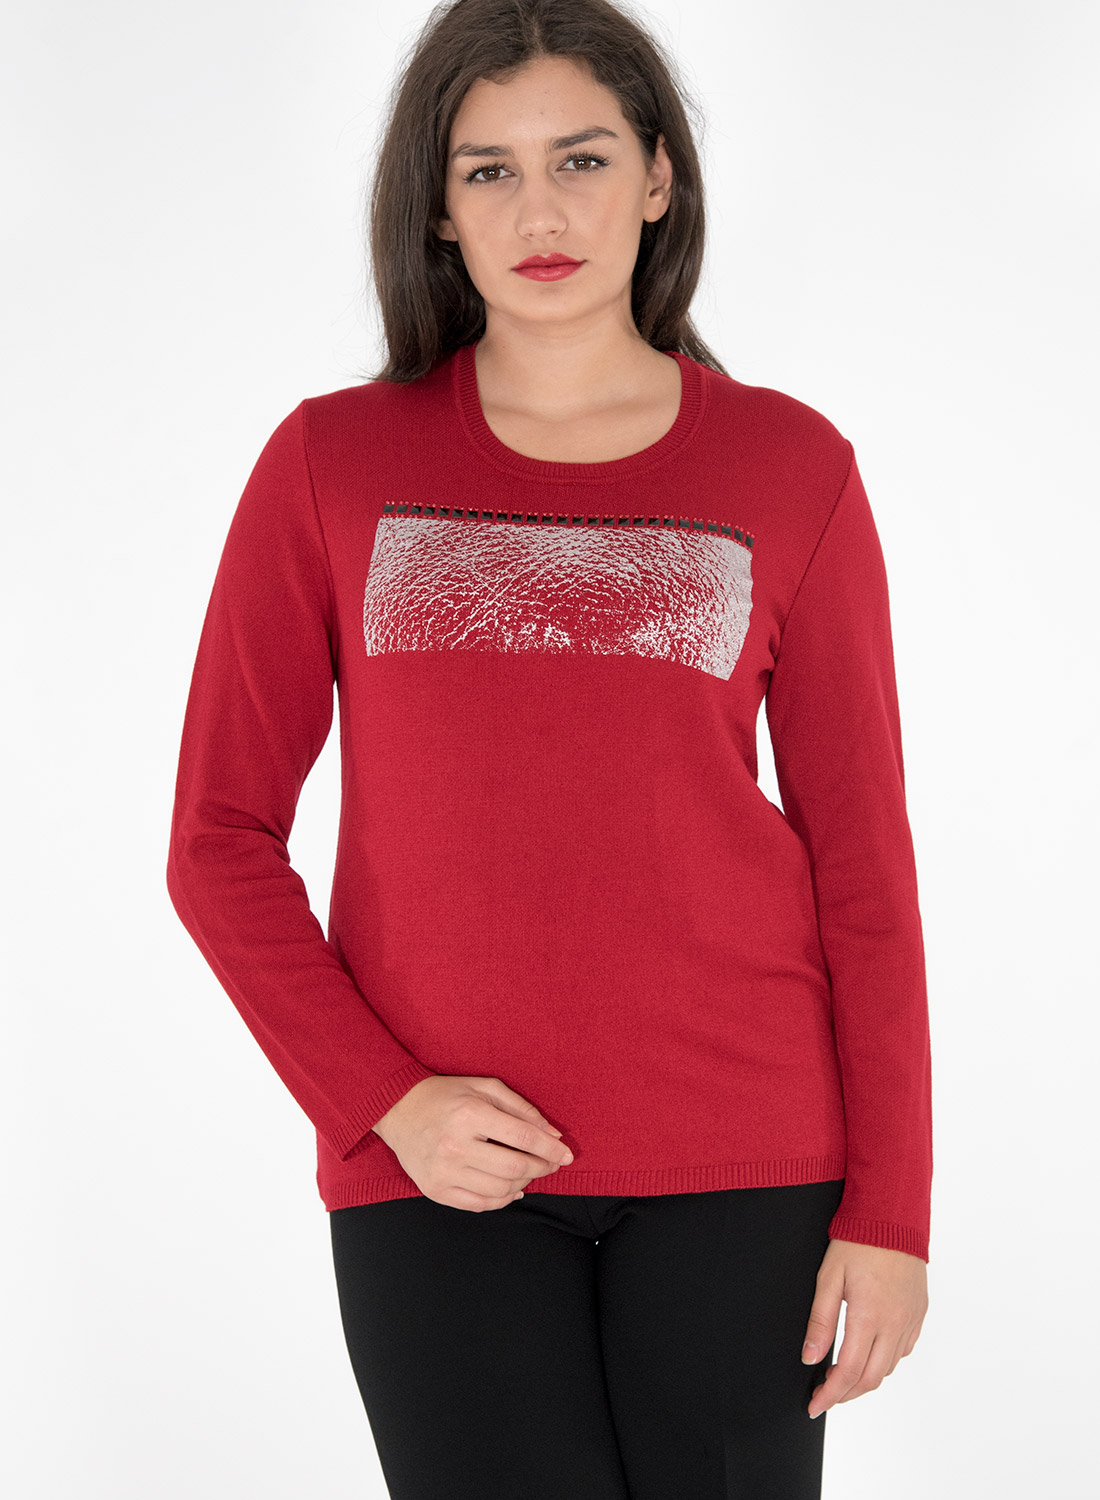 Κόκκινη πλεκτή μπλούζα με στάμπα 5103